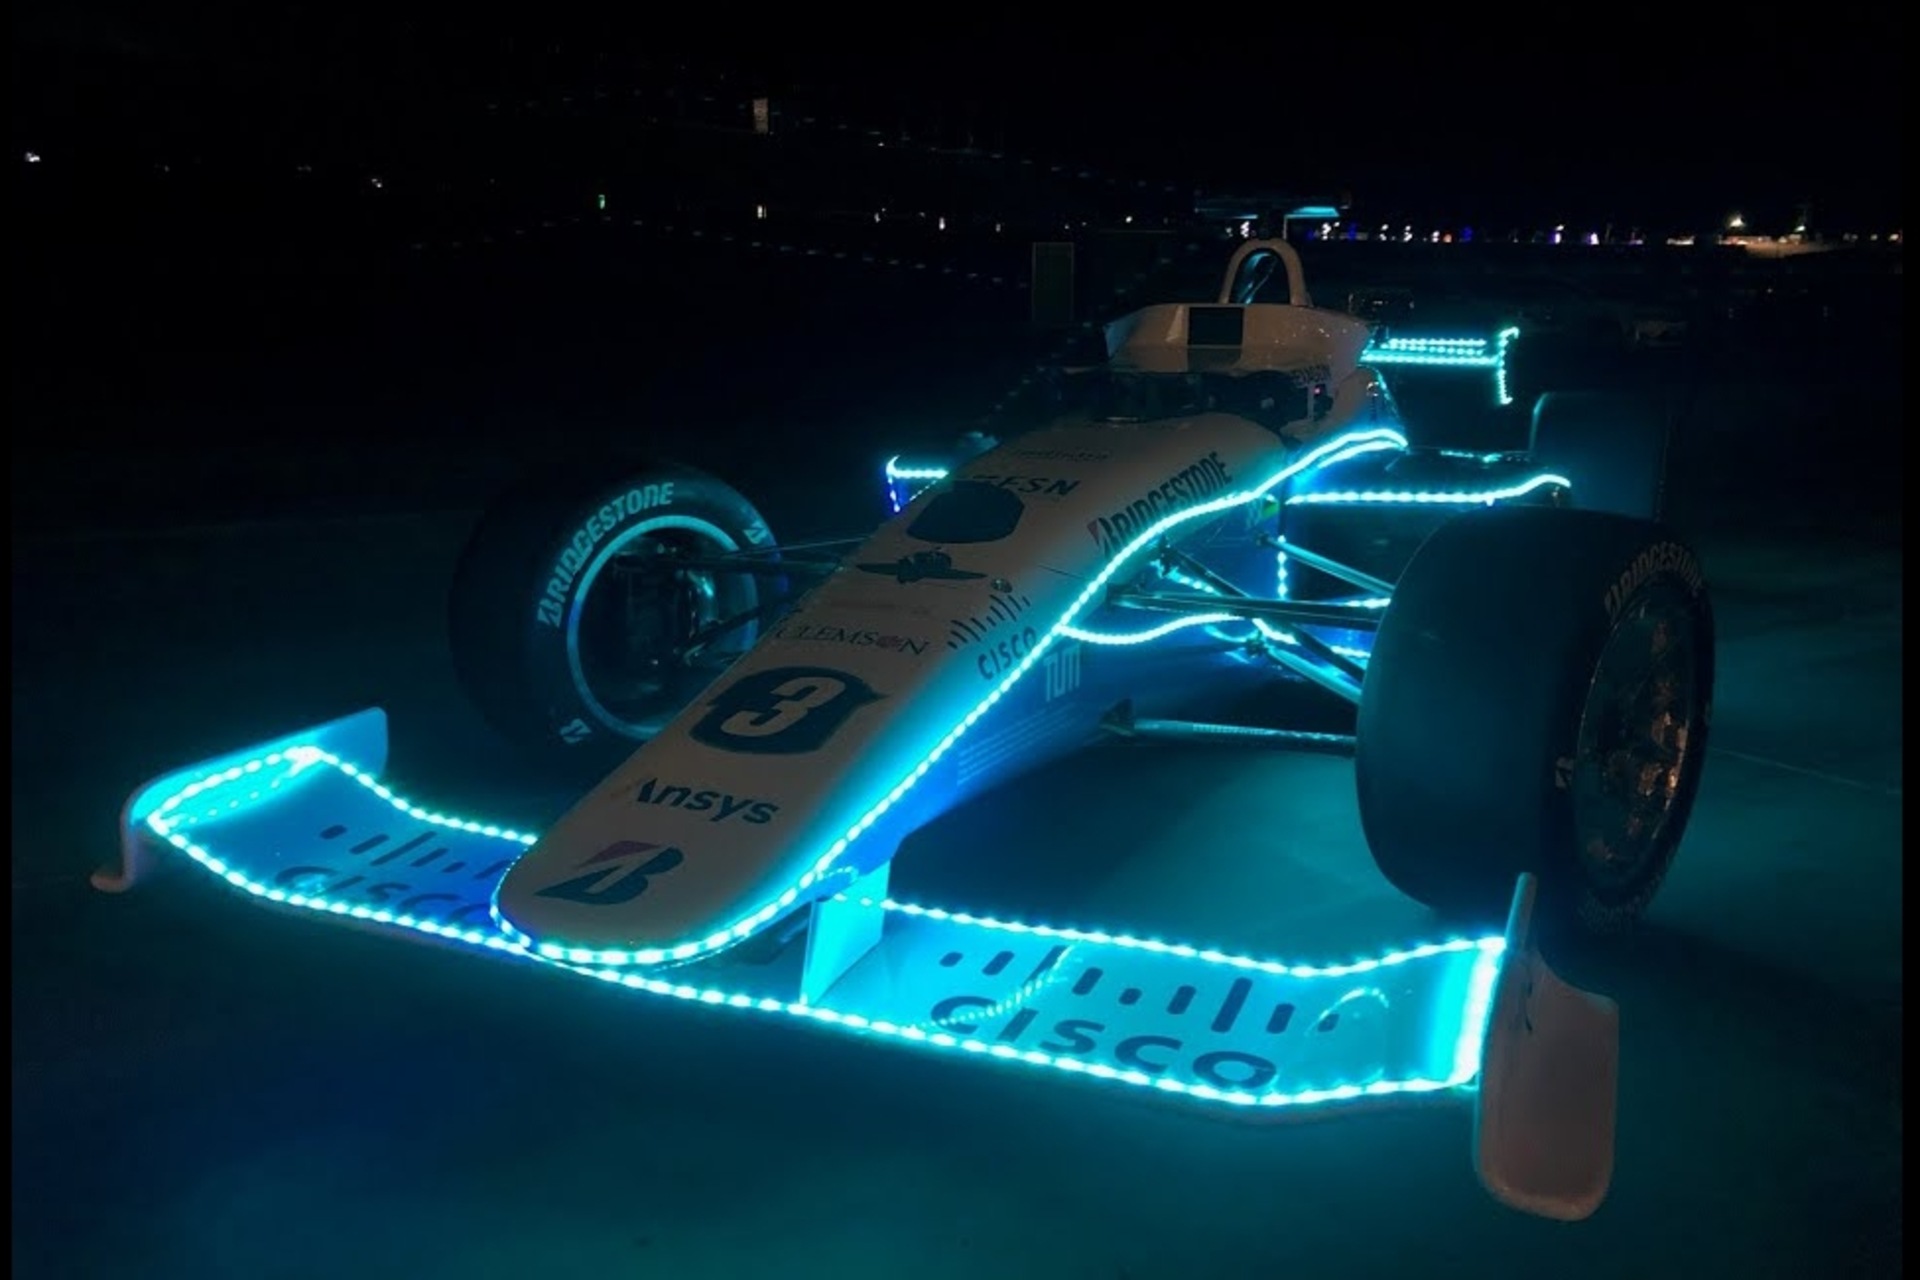 Autonómna jazda: Dallara AV-21 z Indy Autonomous Challenge v akcii v tme na Las Vegas Motor Spedway